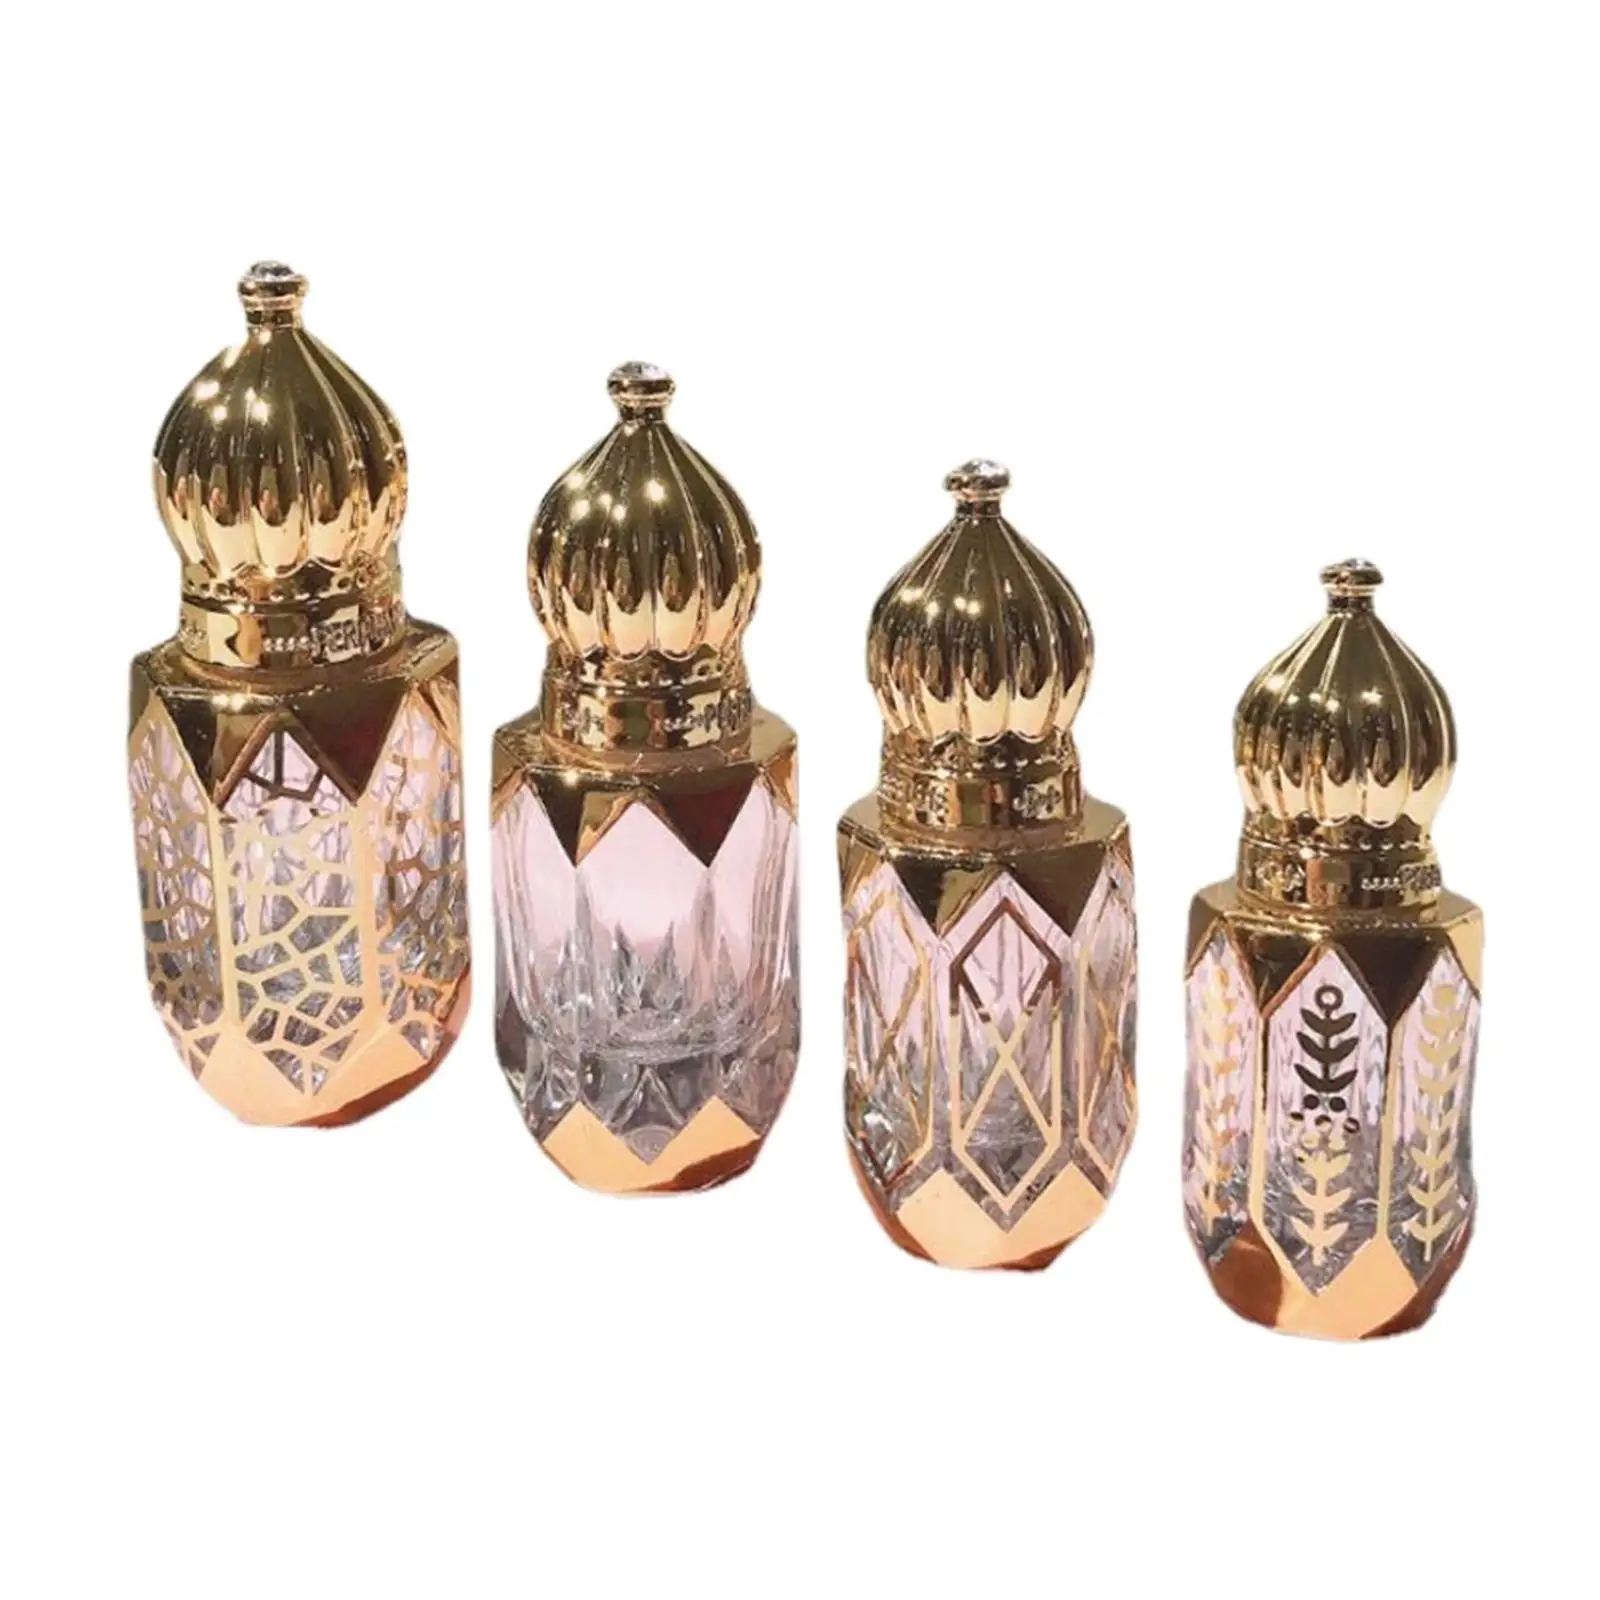 4 Pieces On Bottles Golden 6ml Roller Bottles Vial for Perfume